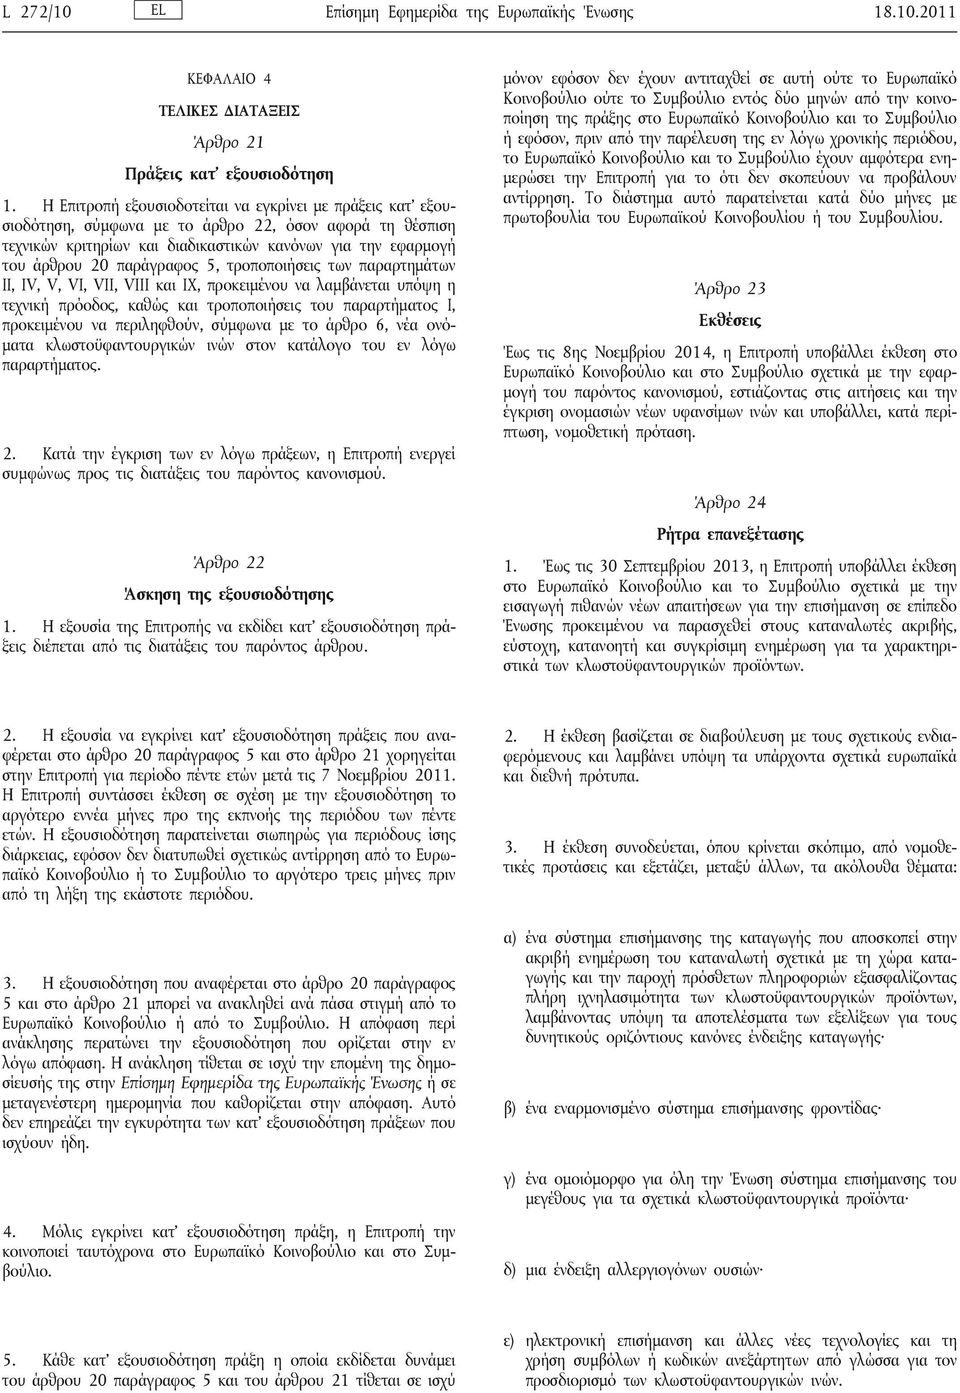 παράγραφος 5, τροποποιήσεις των παραρτημάτων ΙΙ, IV, V, VI, VII, VIII και ΙΧ, προκειμένου να λαμβάνεται υπόψη η τεχνική πρόοδος, καθώς και τροποποιήσεις του παραρτήματος Ι, προκειμένου να